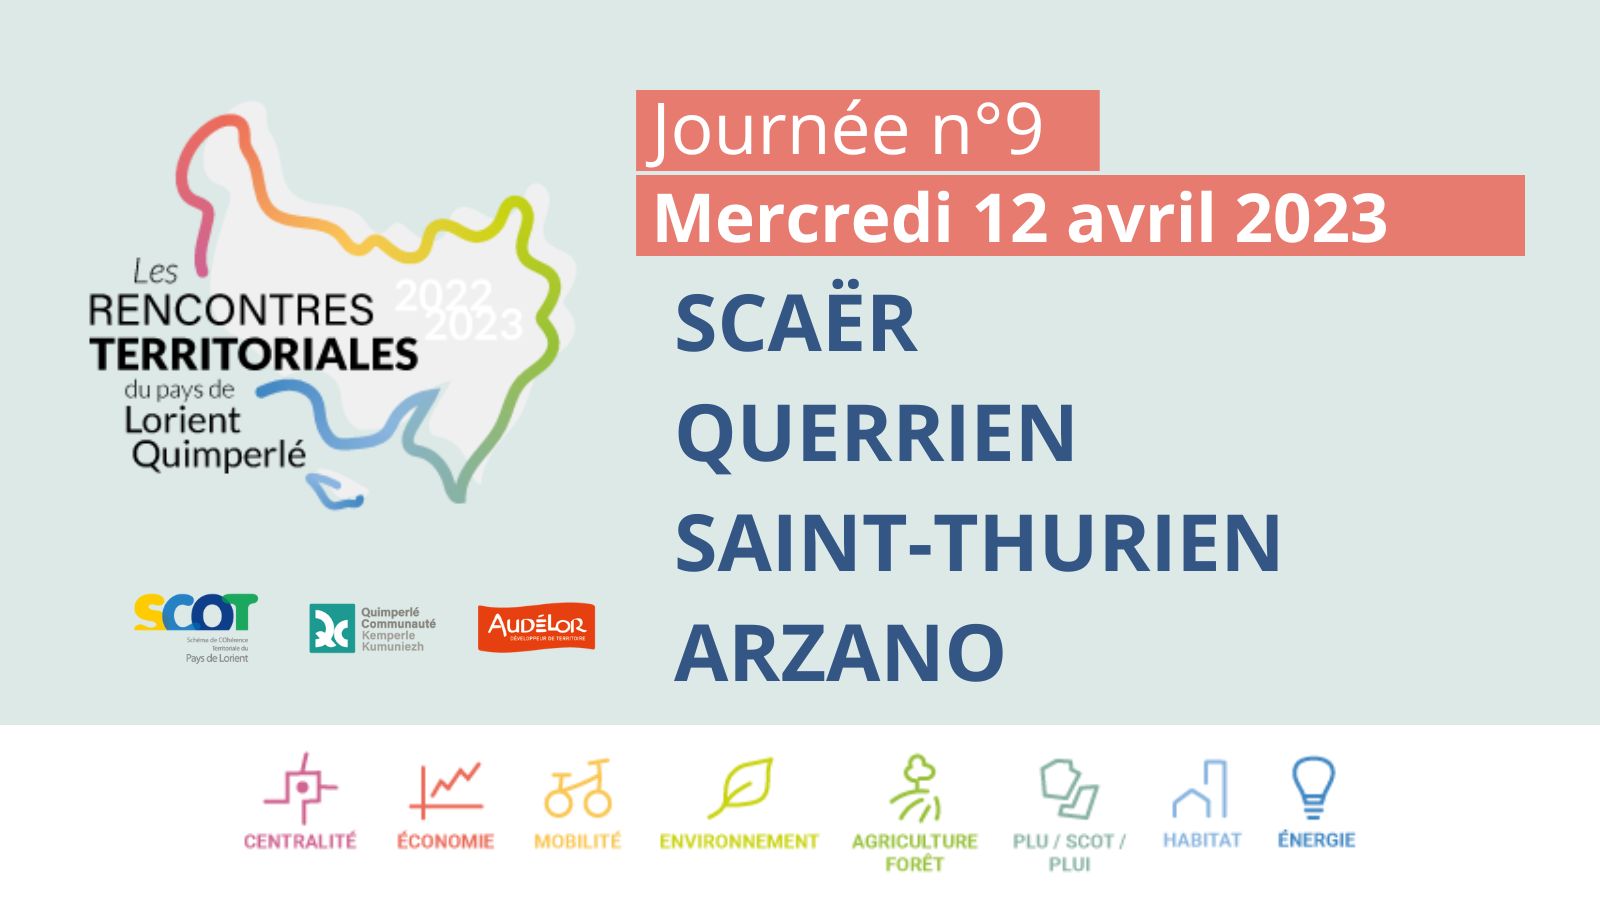 Rencontre territoriale du pays de Lorient-Quimperlé n°9 - Scaër, Querrien, Saint-Thurien, Arzano